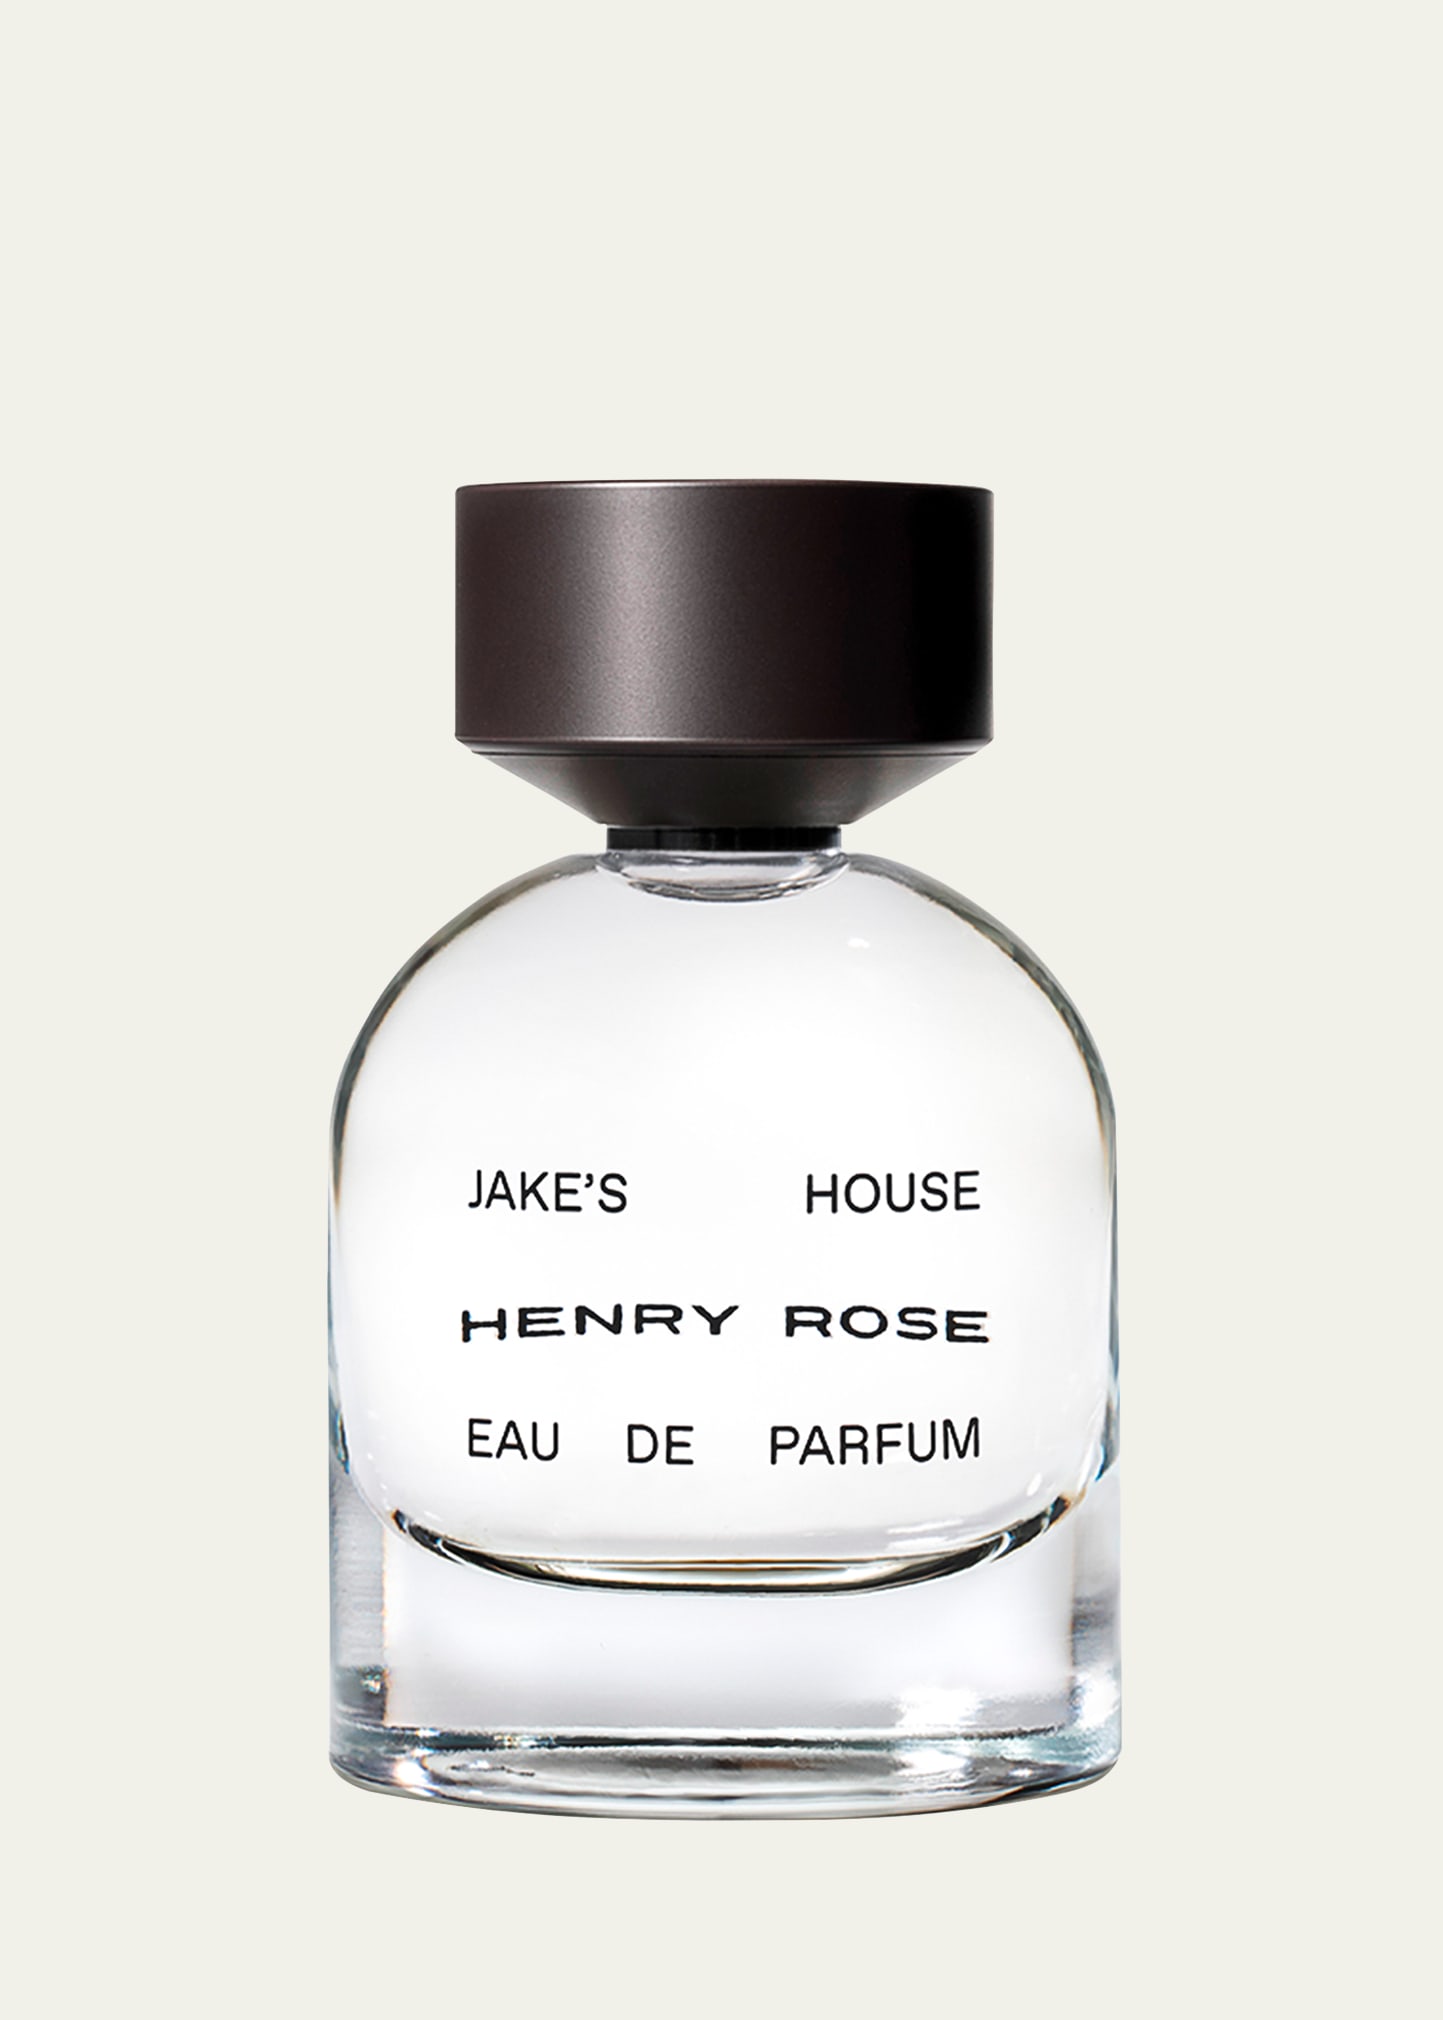 HENRY ROSE Jake's House Eau de Parfum, 1.7 oz.